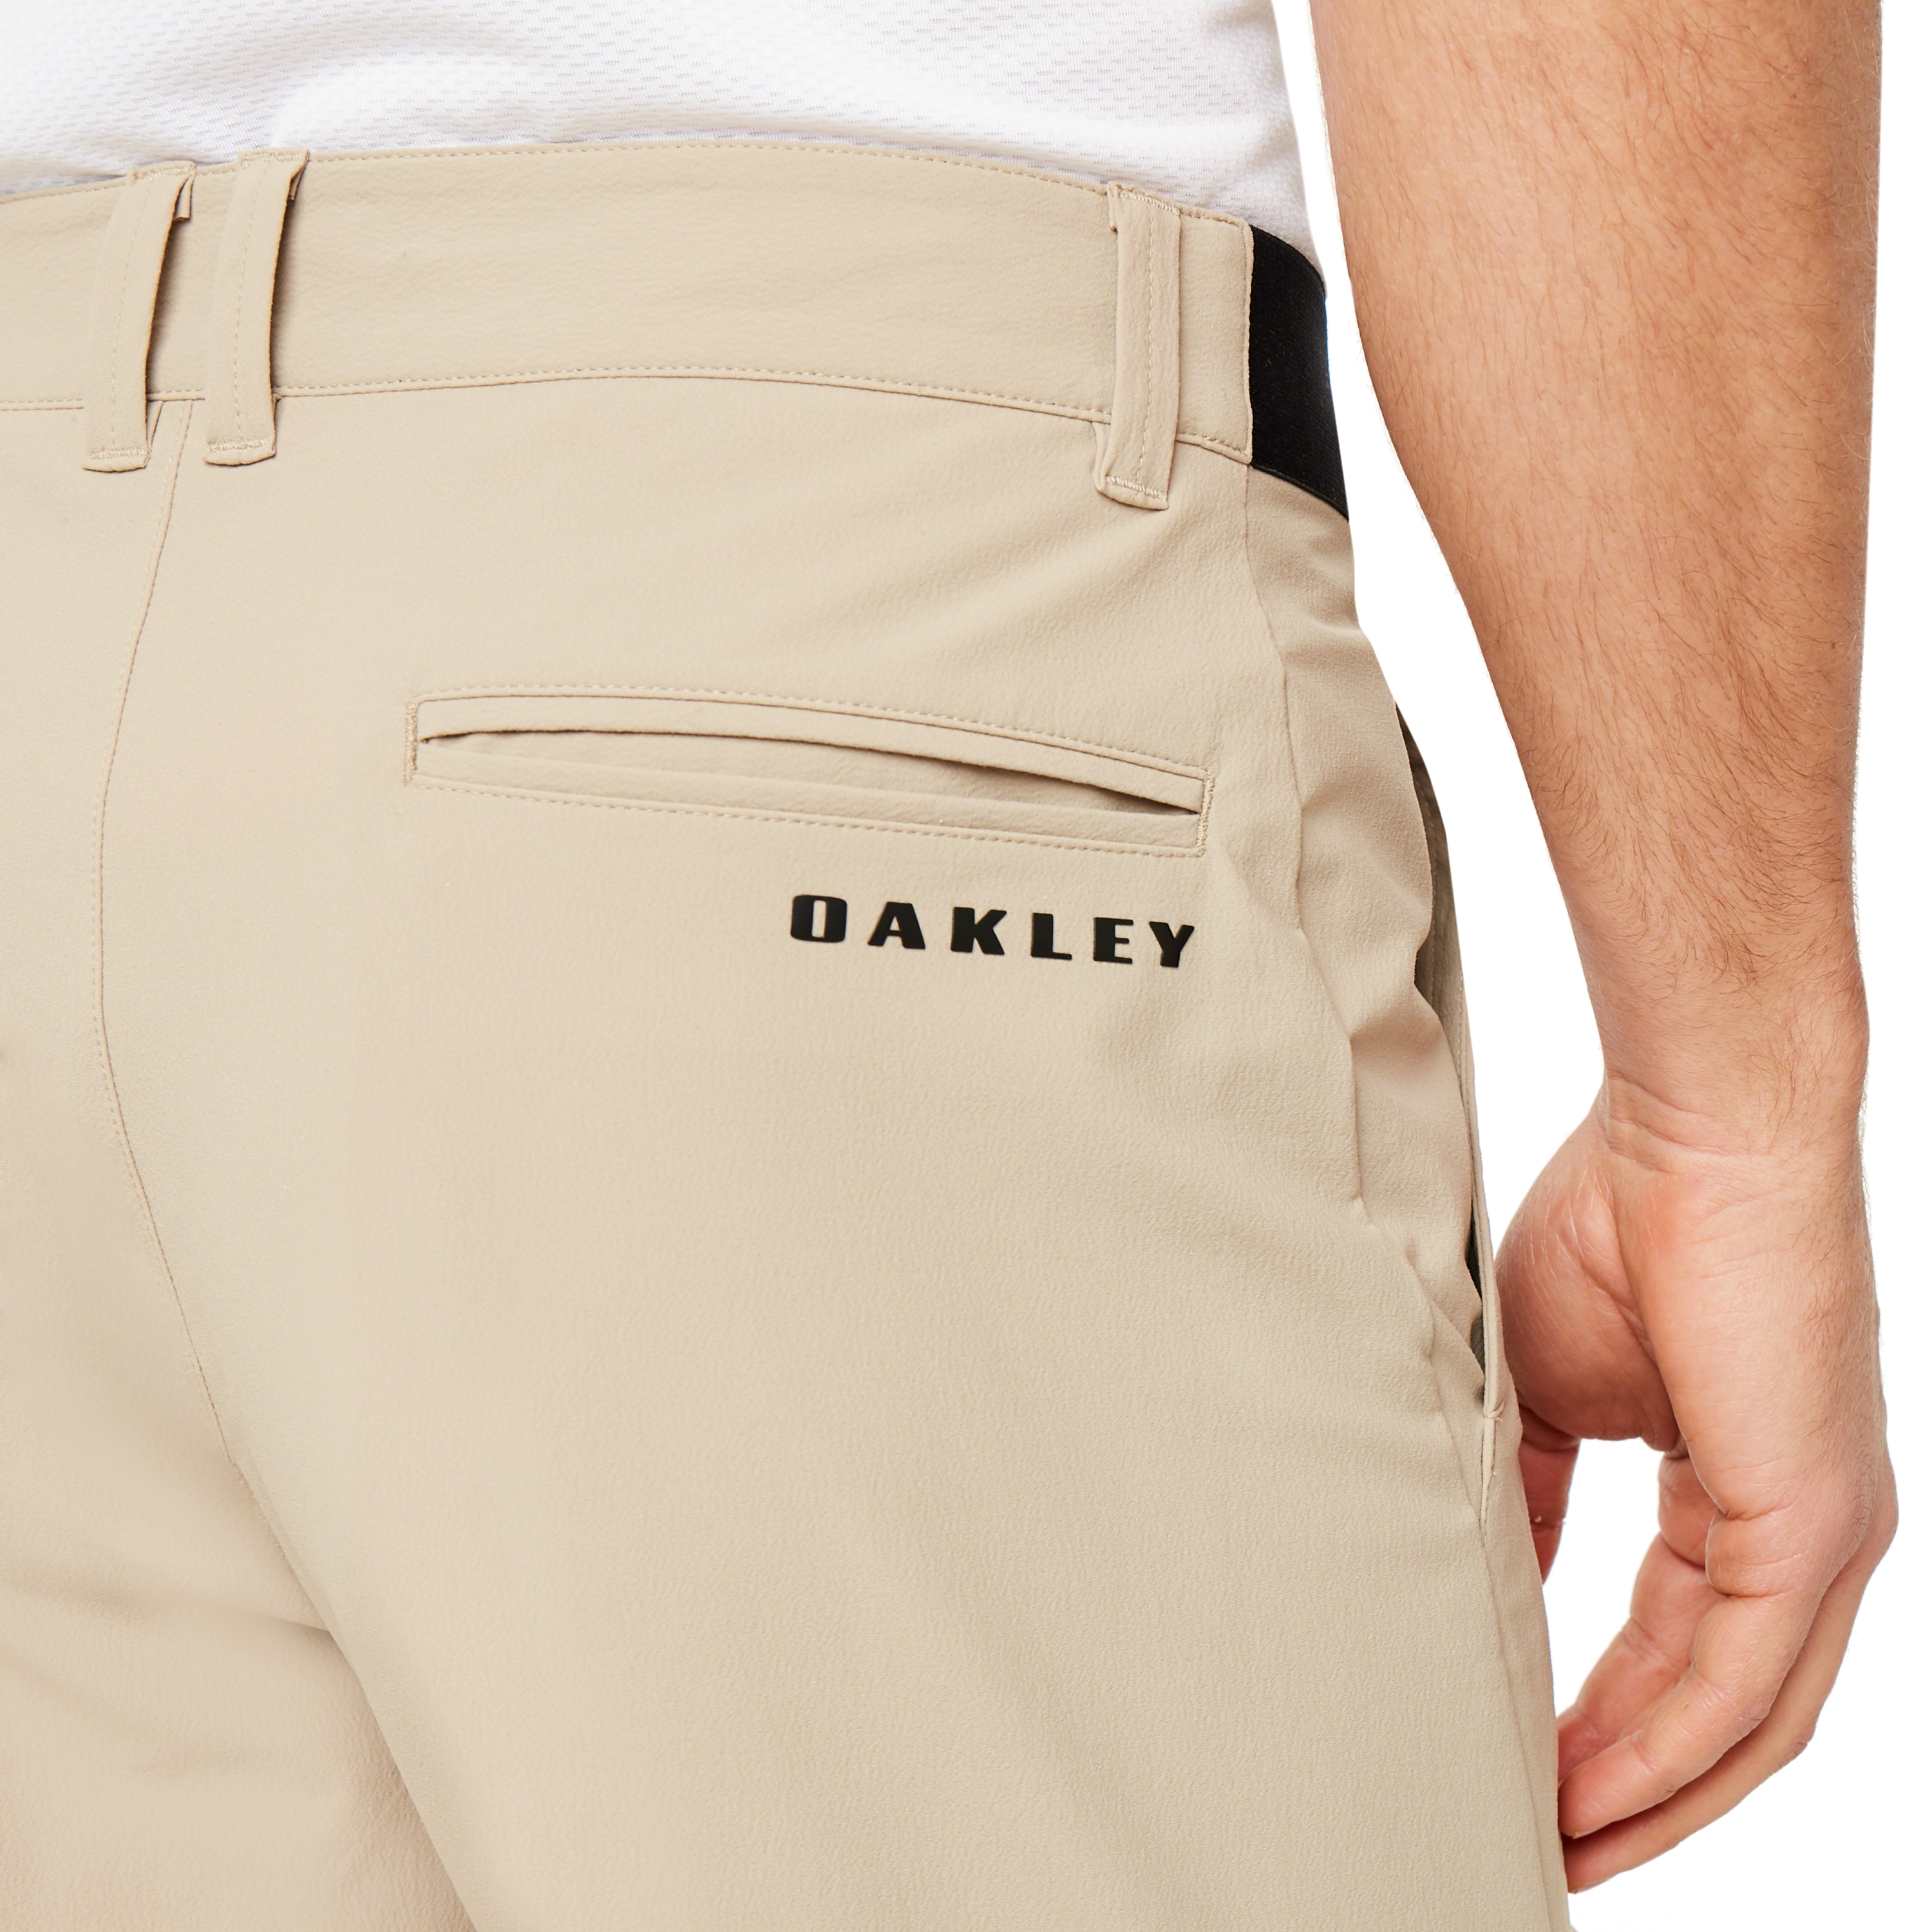 oakley khaki shorts